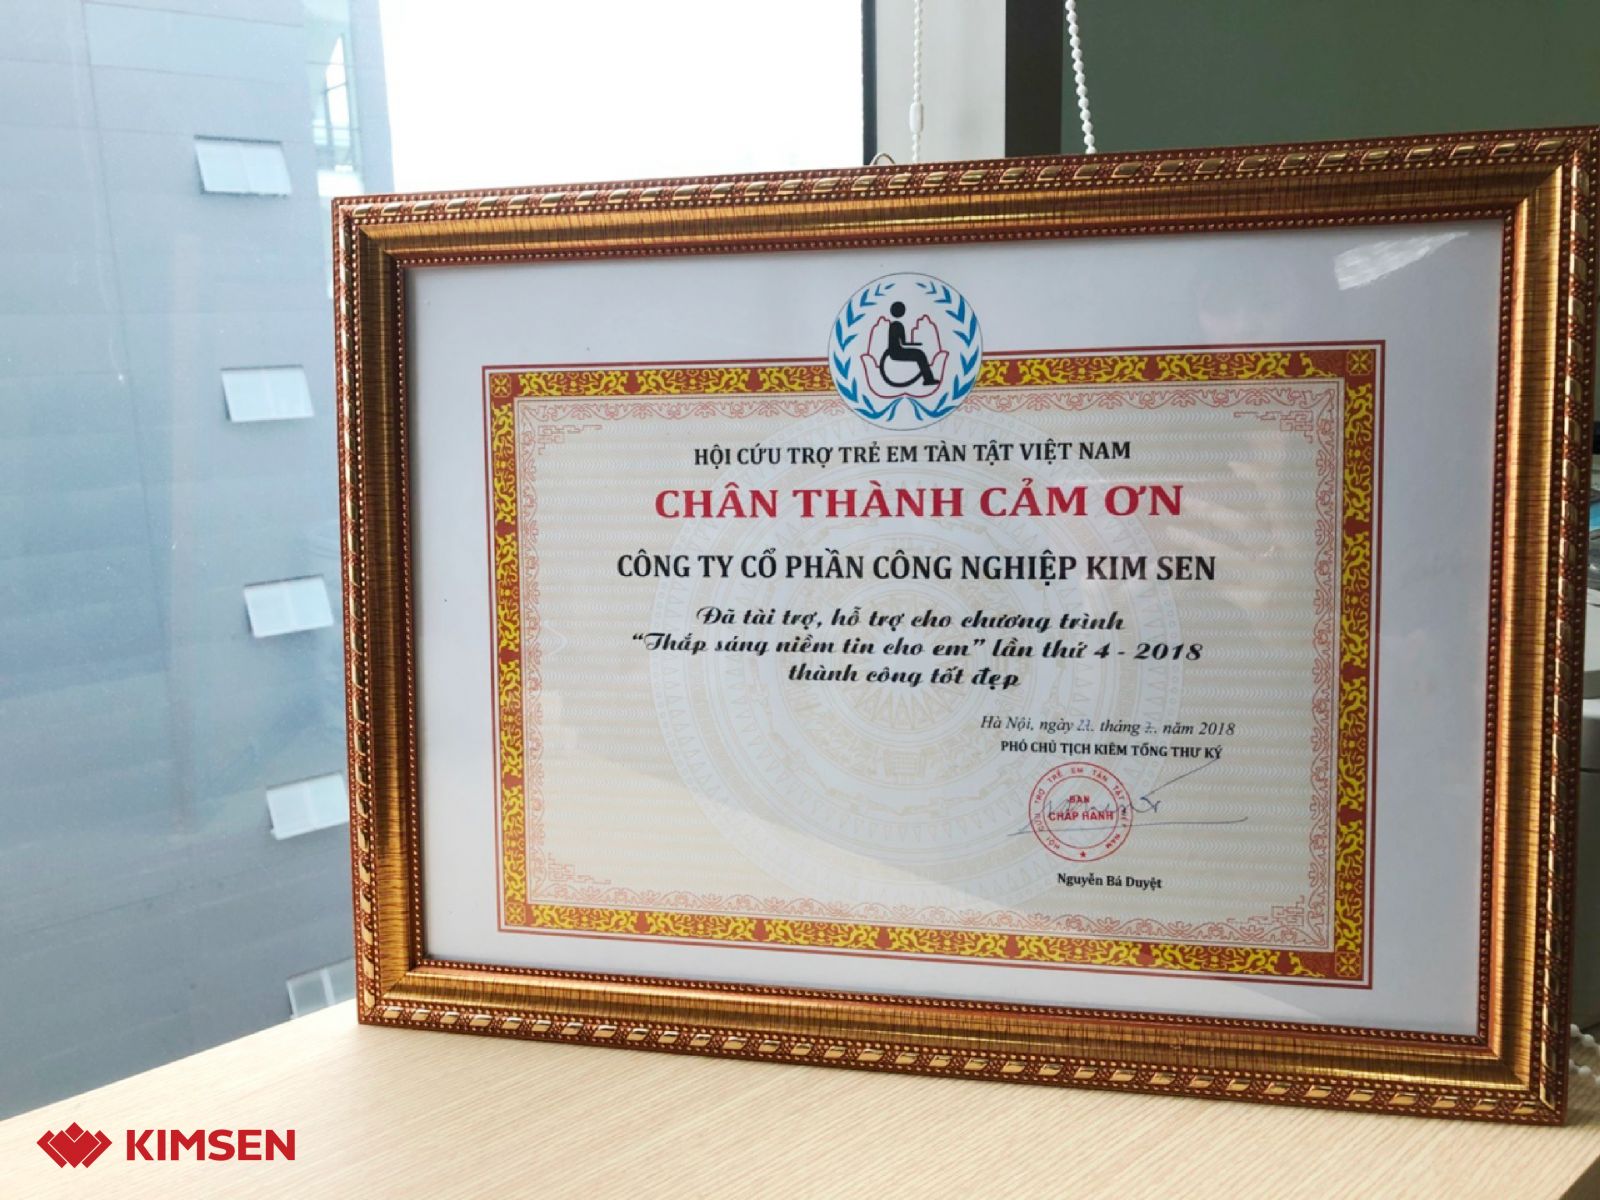 KIMSEN đồng hành & đóng góp vào những hoạt động của Hội Cứu trợ trẻ em tàn tật Việt Nam